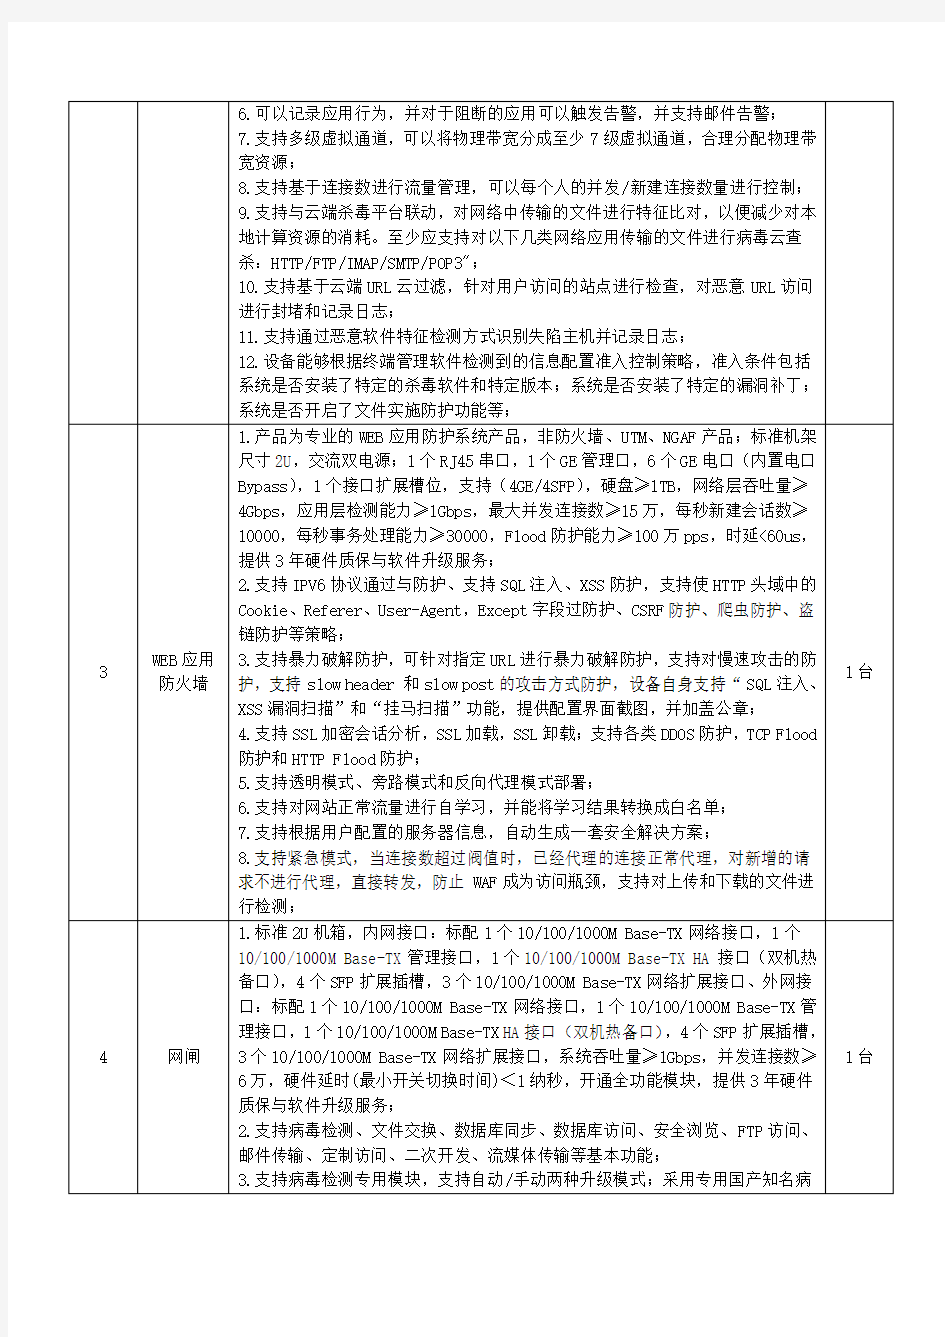 广饶中医院网络安全设备一期技术参数.pdf